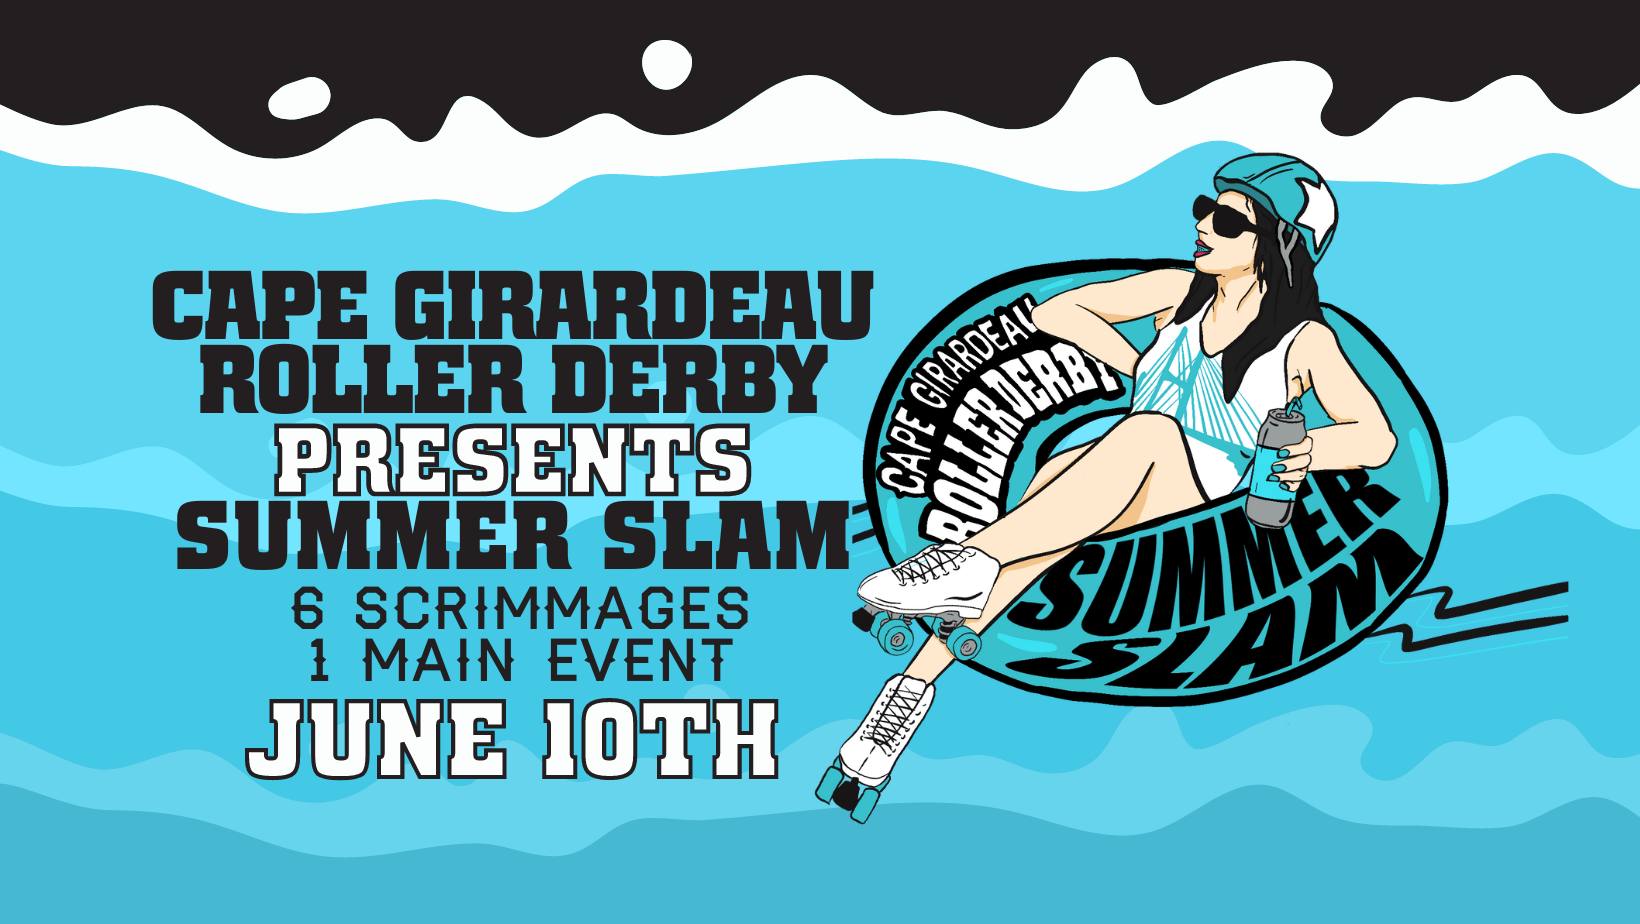 CGRD presents Summer Slam